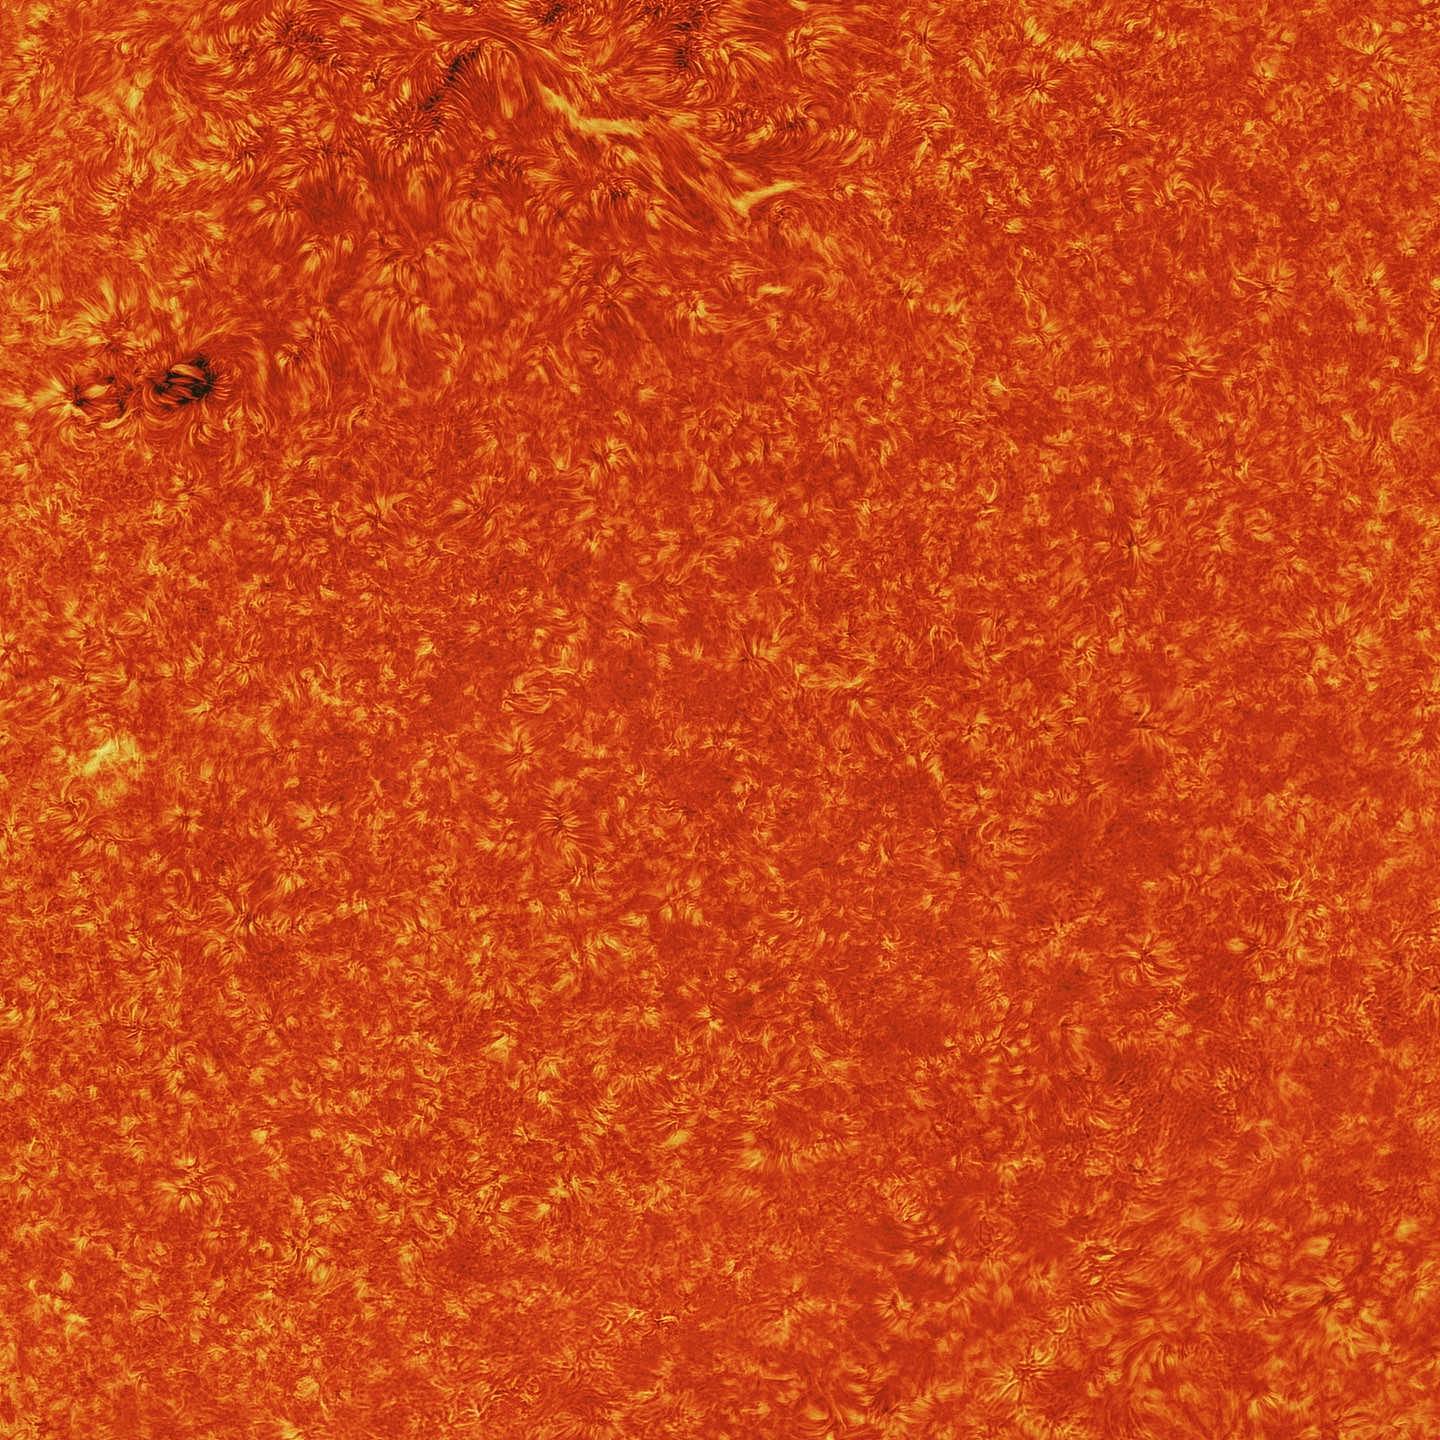 天文摄影家用15万张图制作出一张壮观的太阳照 - 3